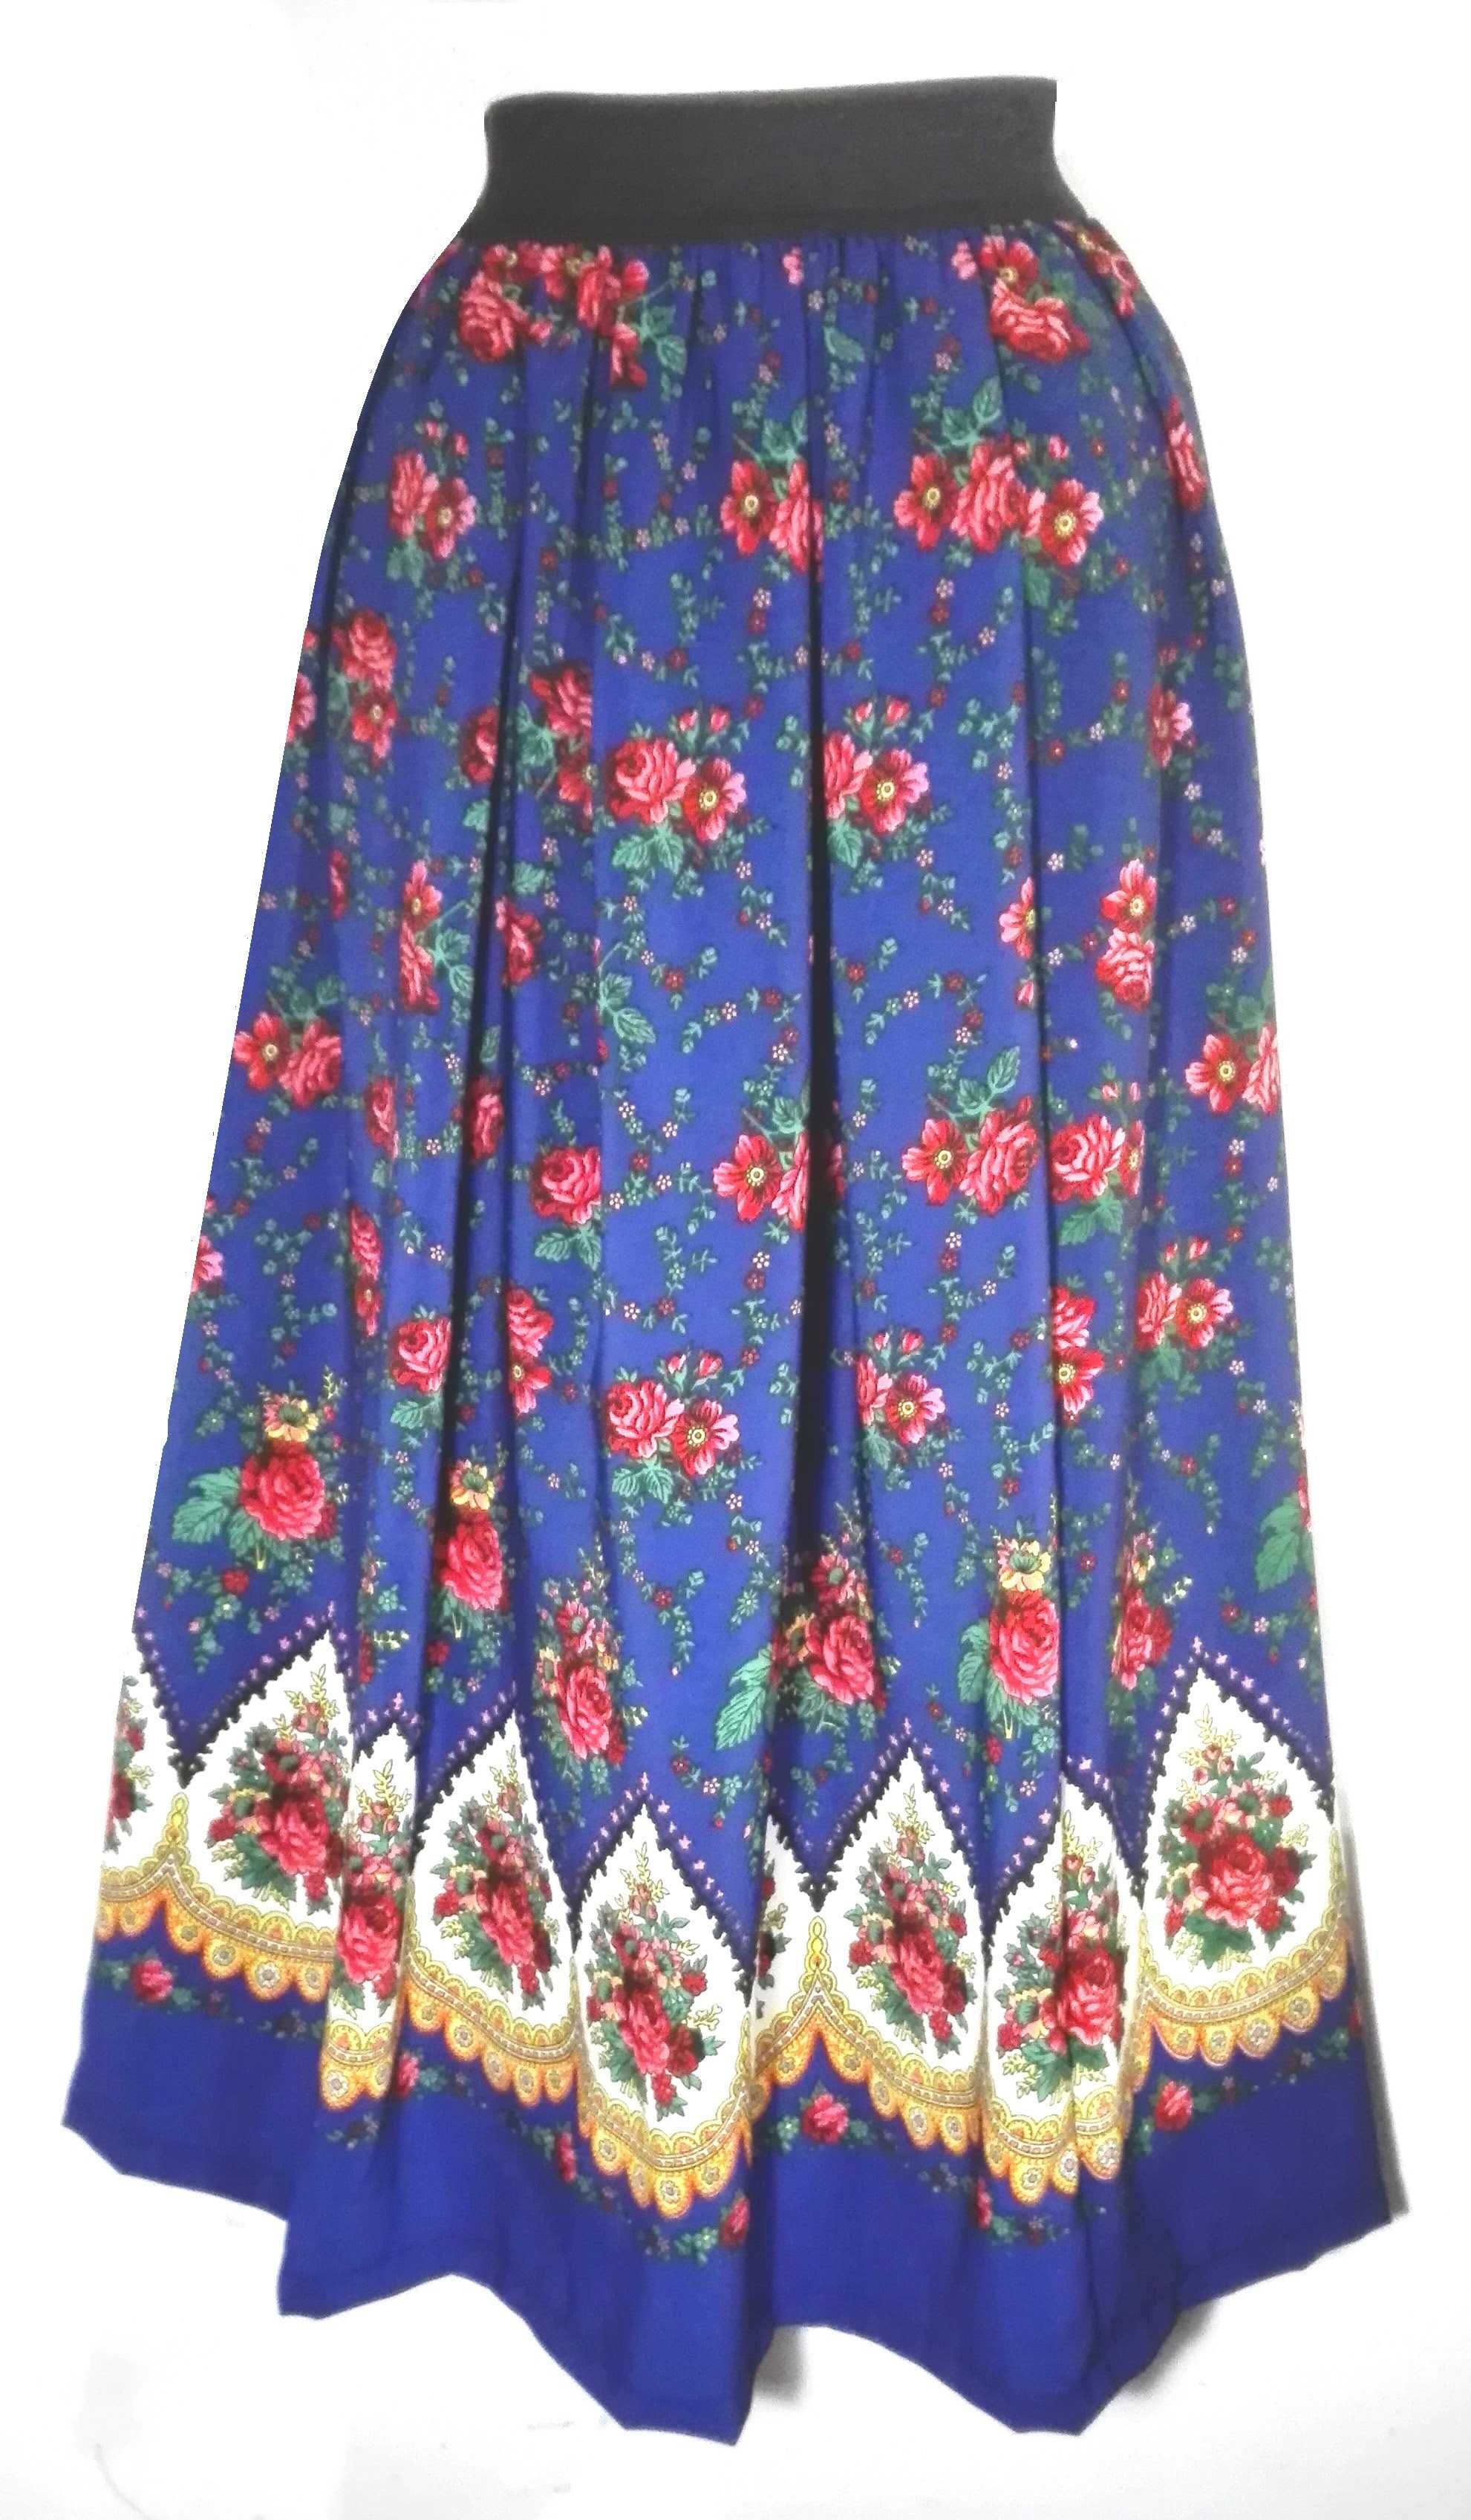 Nowa piękna spódnica góralska folk cleo rozmiary